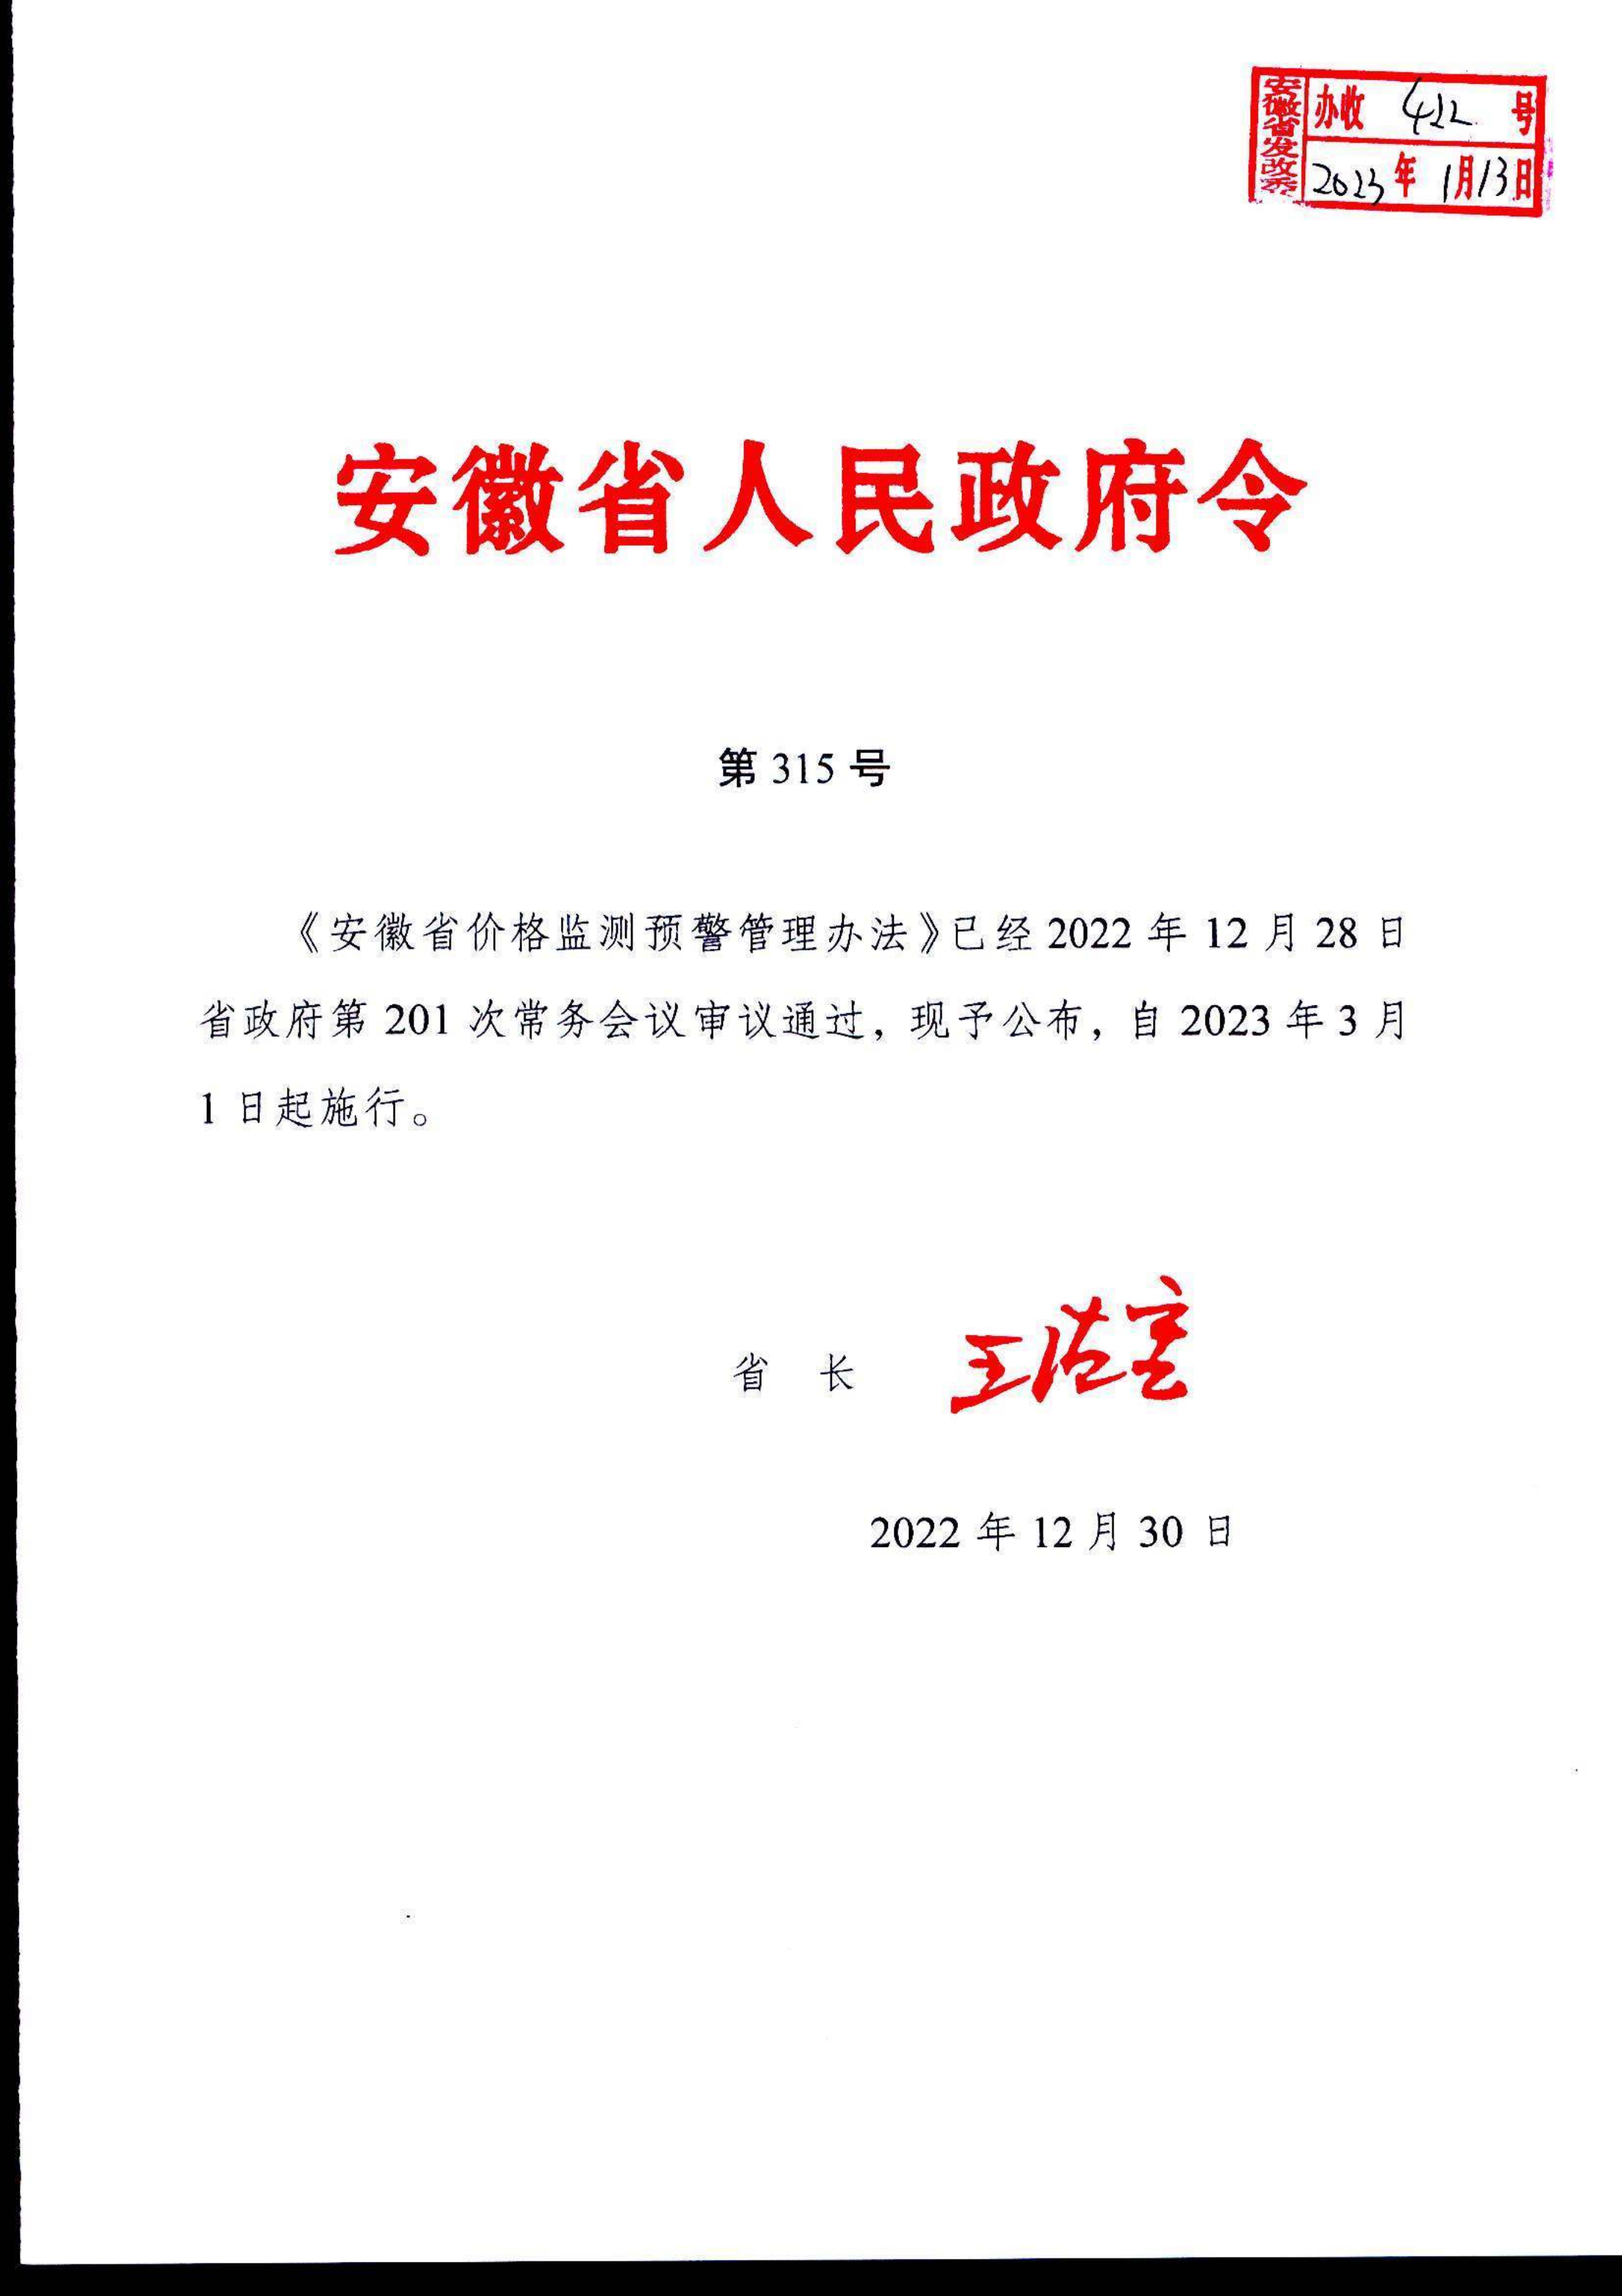 安徽省价格监测预警管理办法(1)(1)_1.png